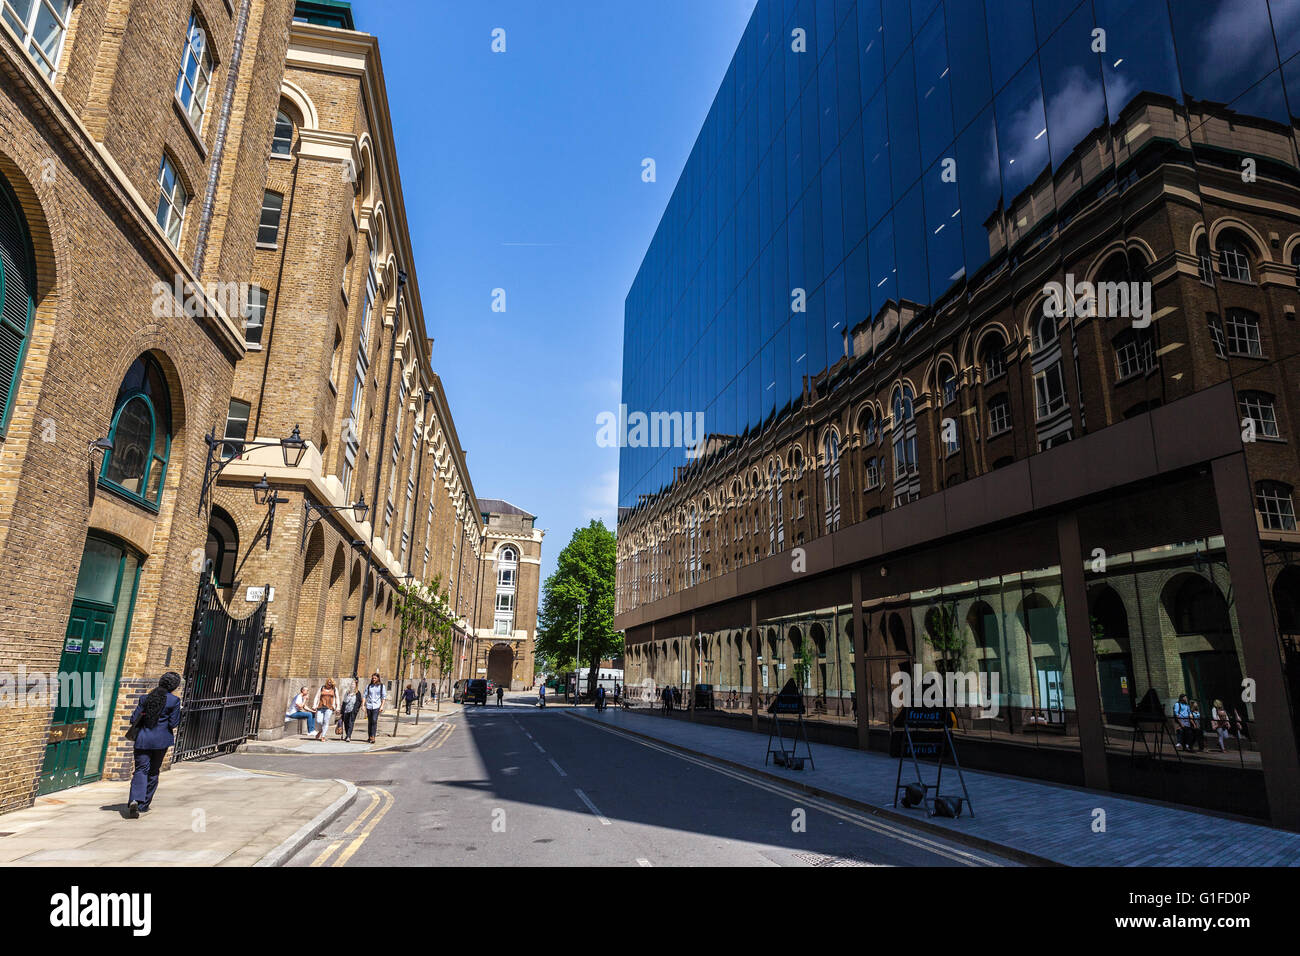 Stehen Sie sich zwischen moderner und klassischer Architektur, Schlacht Bridge Lane, London Borough of Southwark, SE1, England, UK Stockfoto